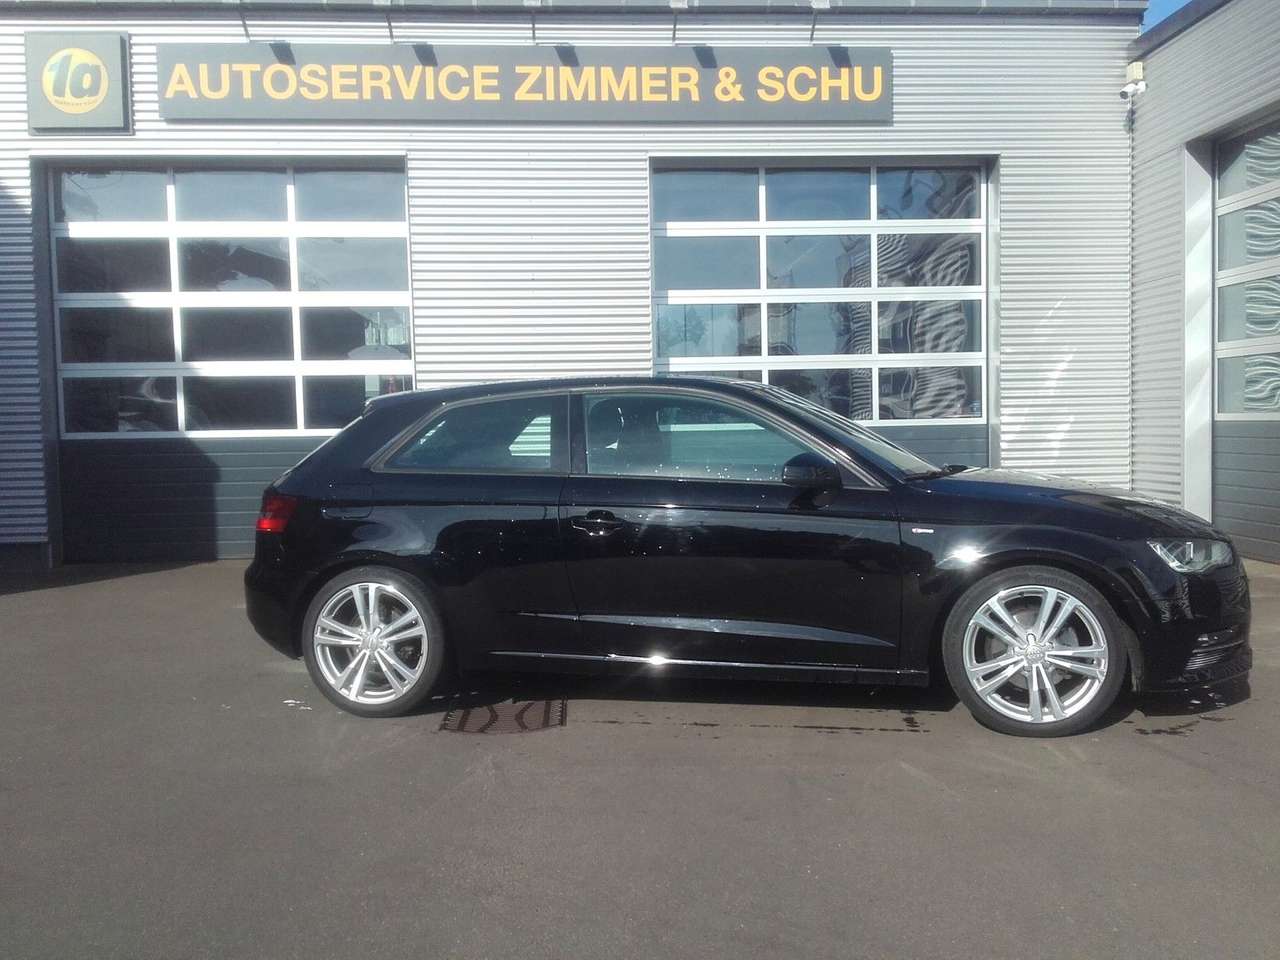 Used Audi A3 